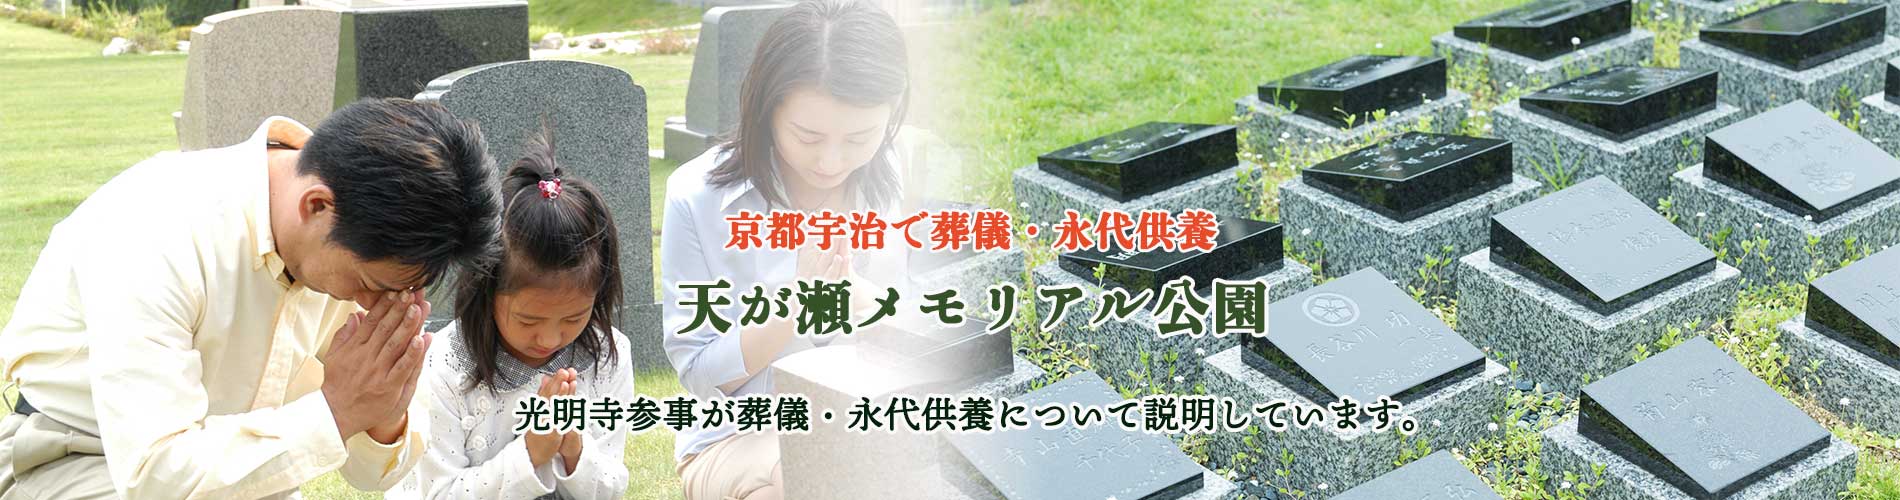 天が瀬メモリアル公園・京都宇治で葬儀・永代供養